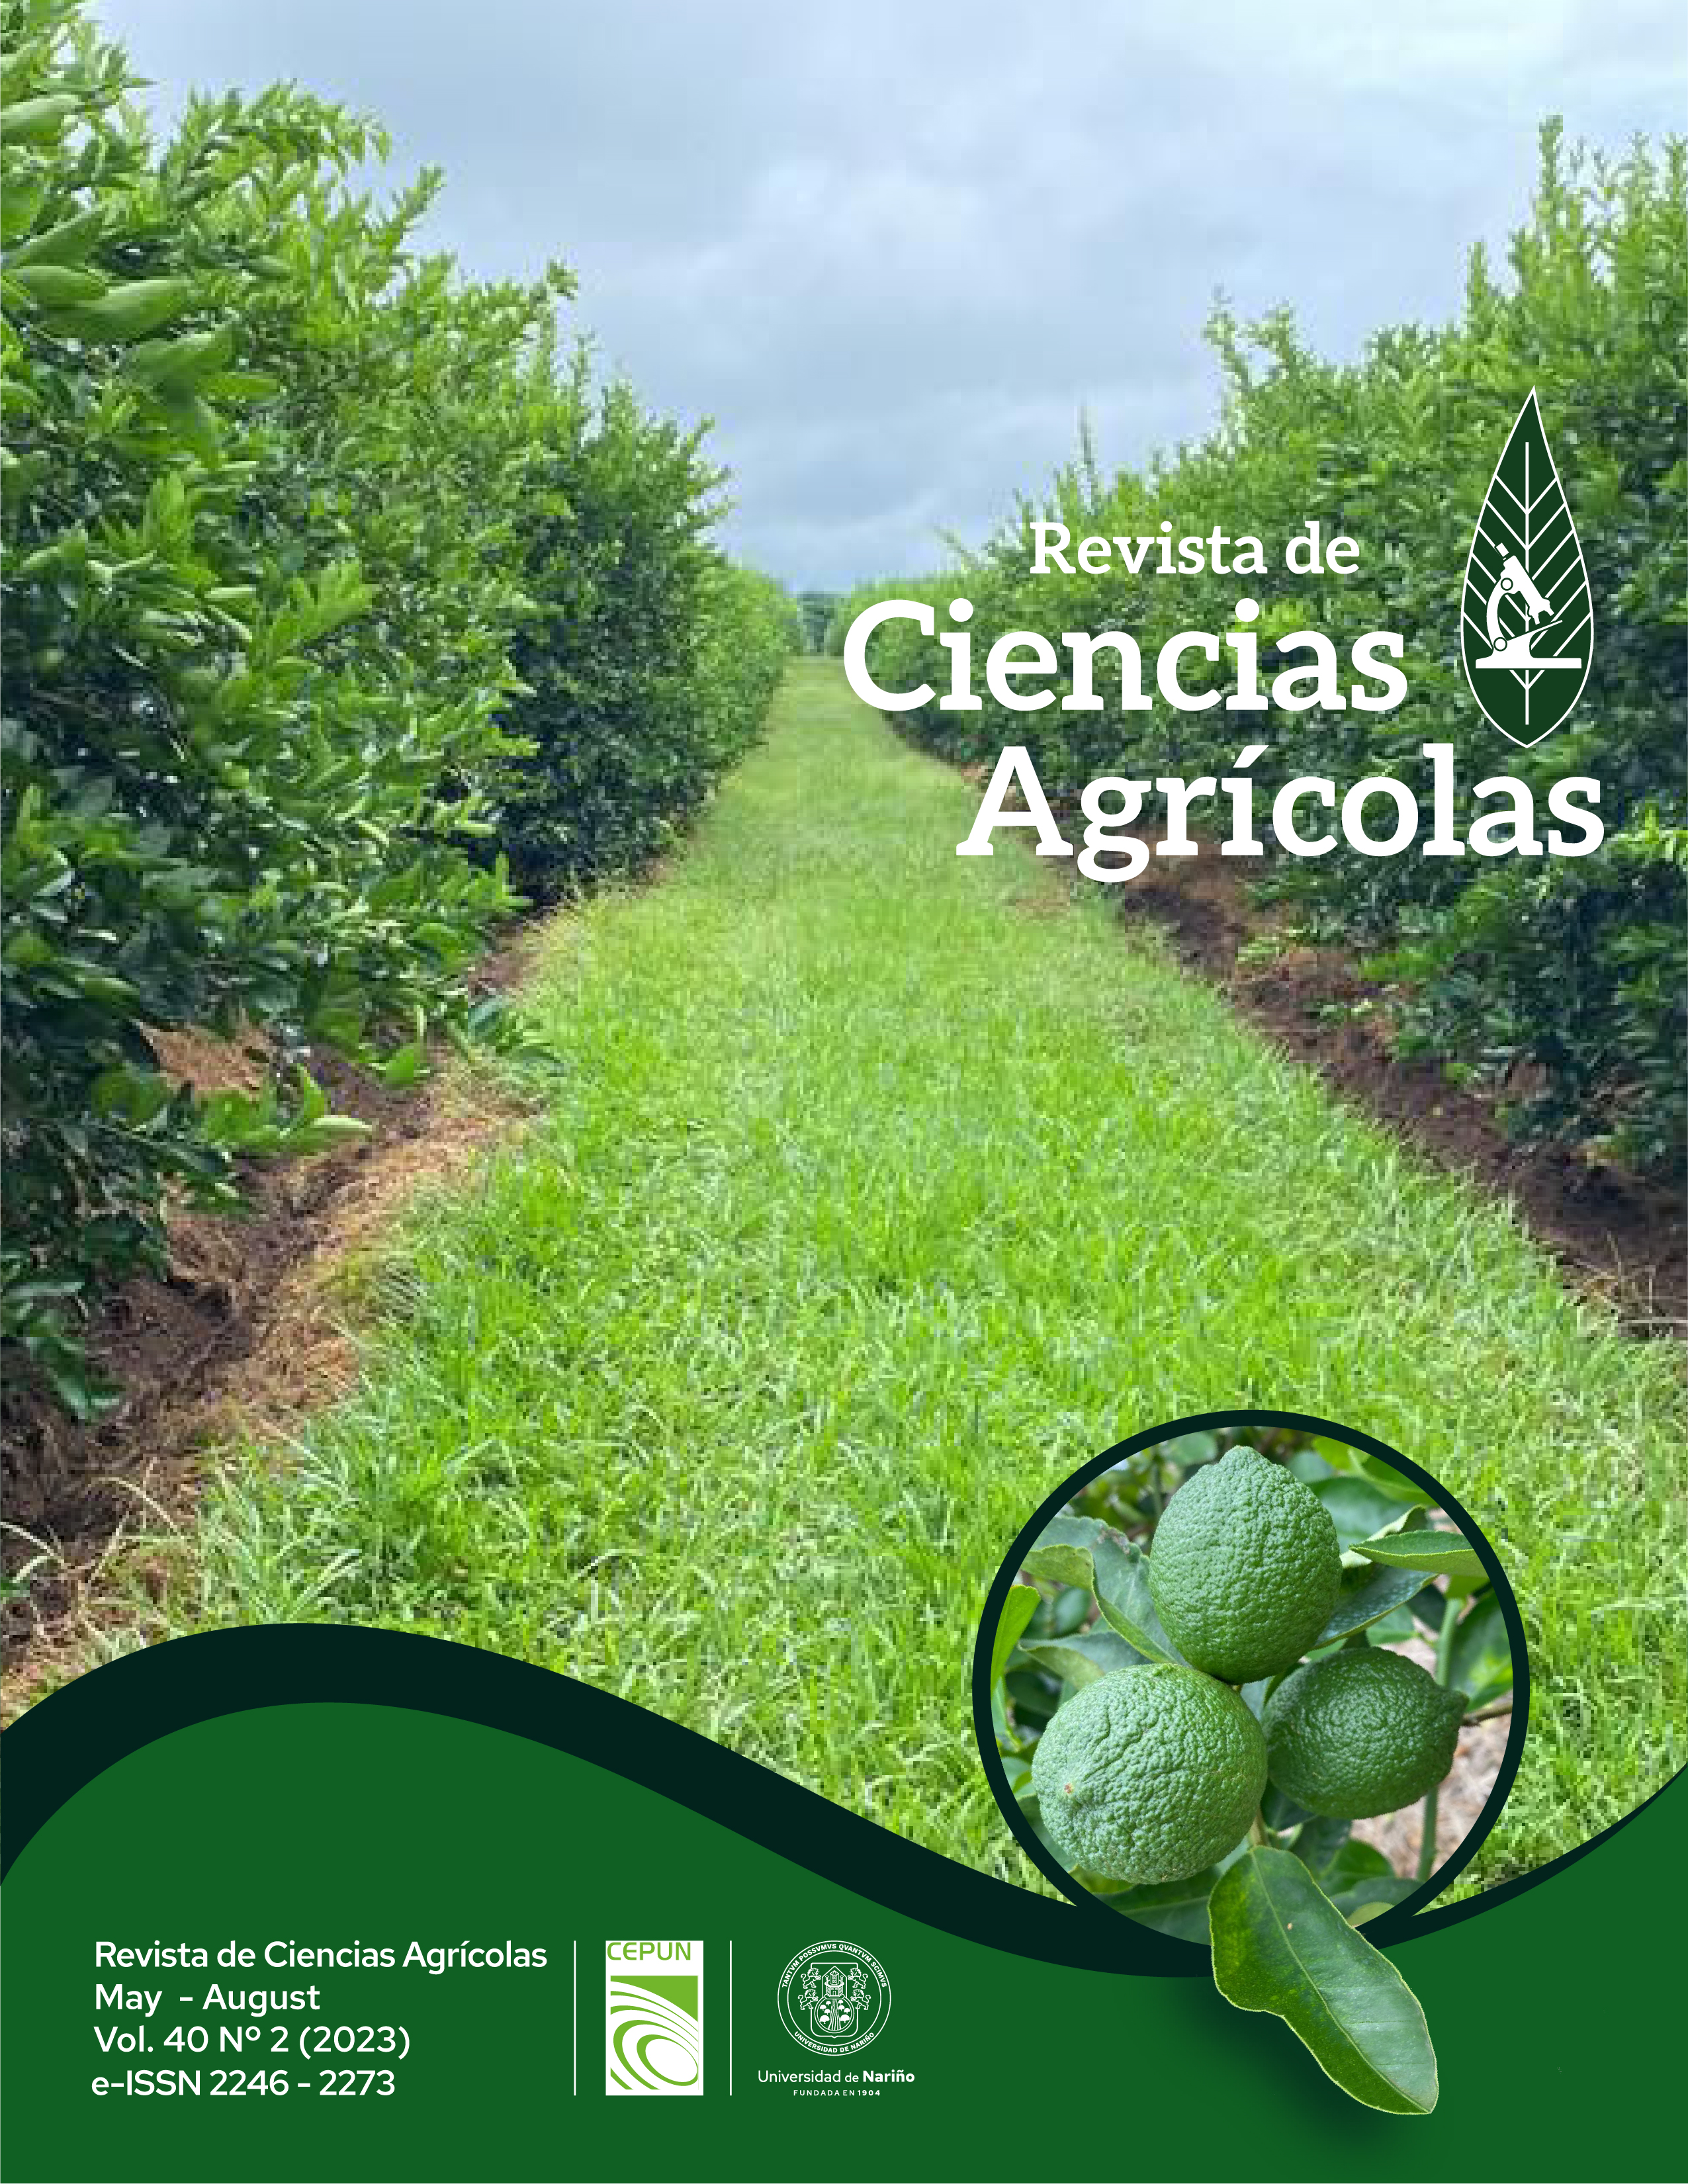 					View Vol. 40 No. 2 (2023): Revista de Ciencias Agrícolas -  Mayo - August 2023
				